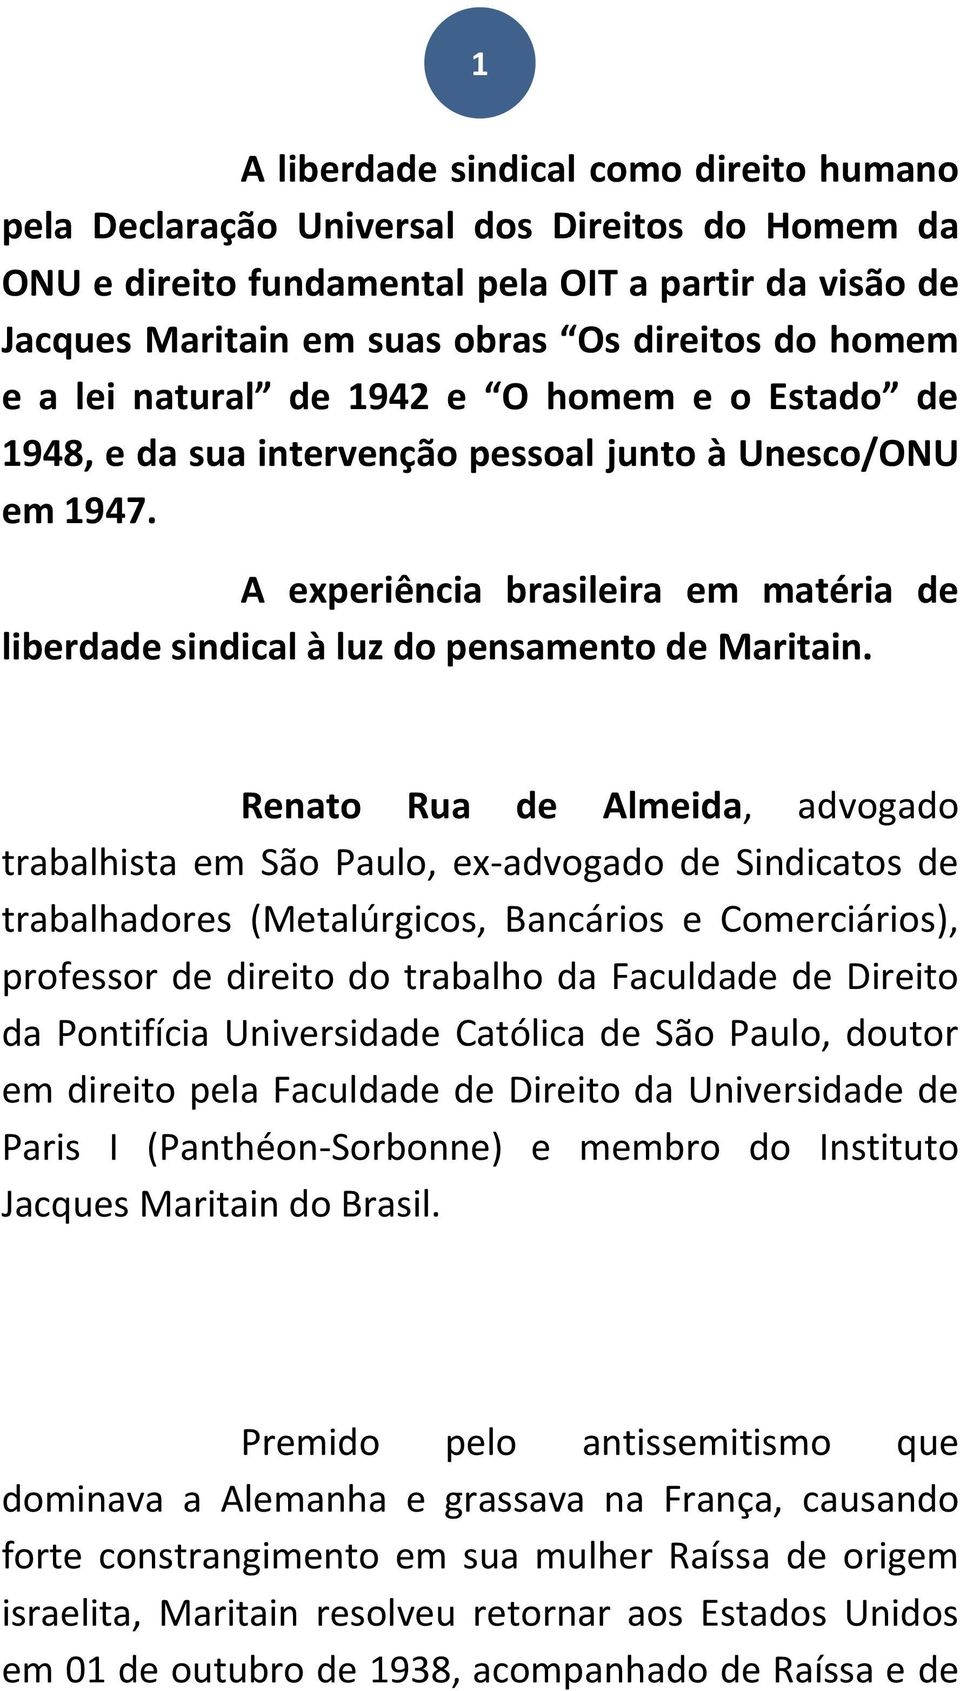 A experiência brasileira em matéria de liberdade sindical à luz do pensamento de Maritain.